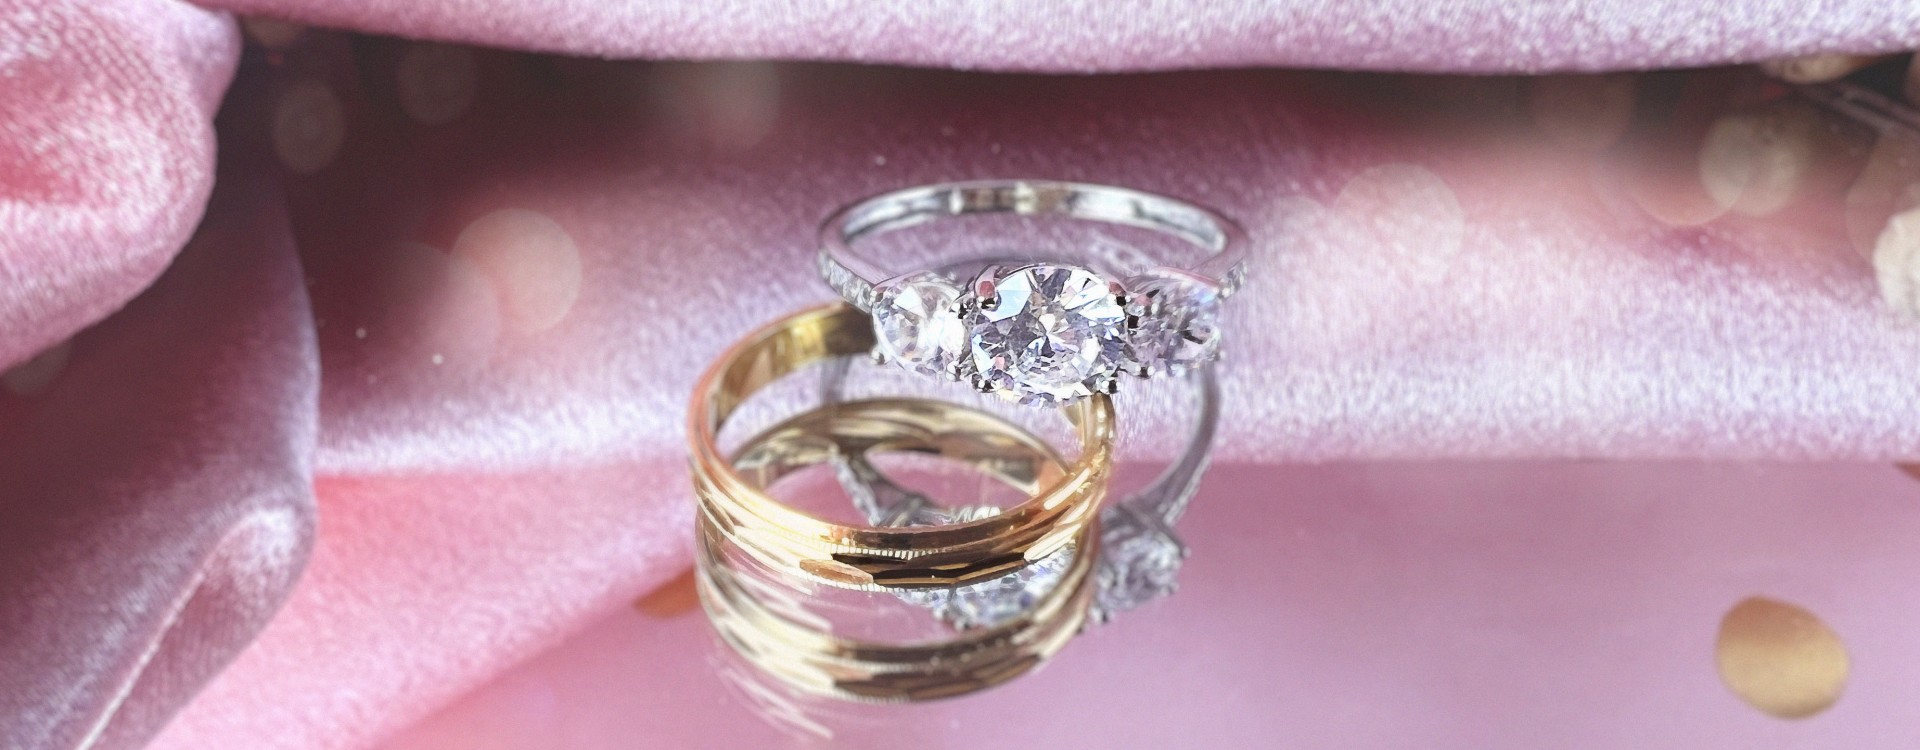 Los anillos, símbolo de la alianza matrimonial